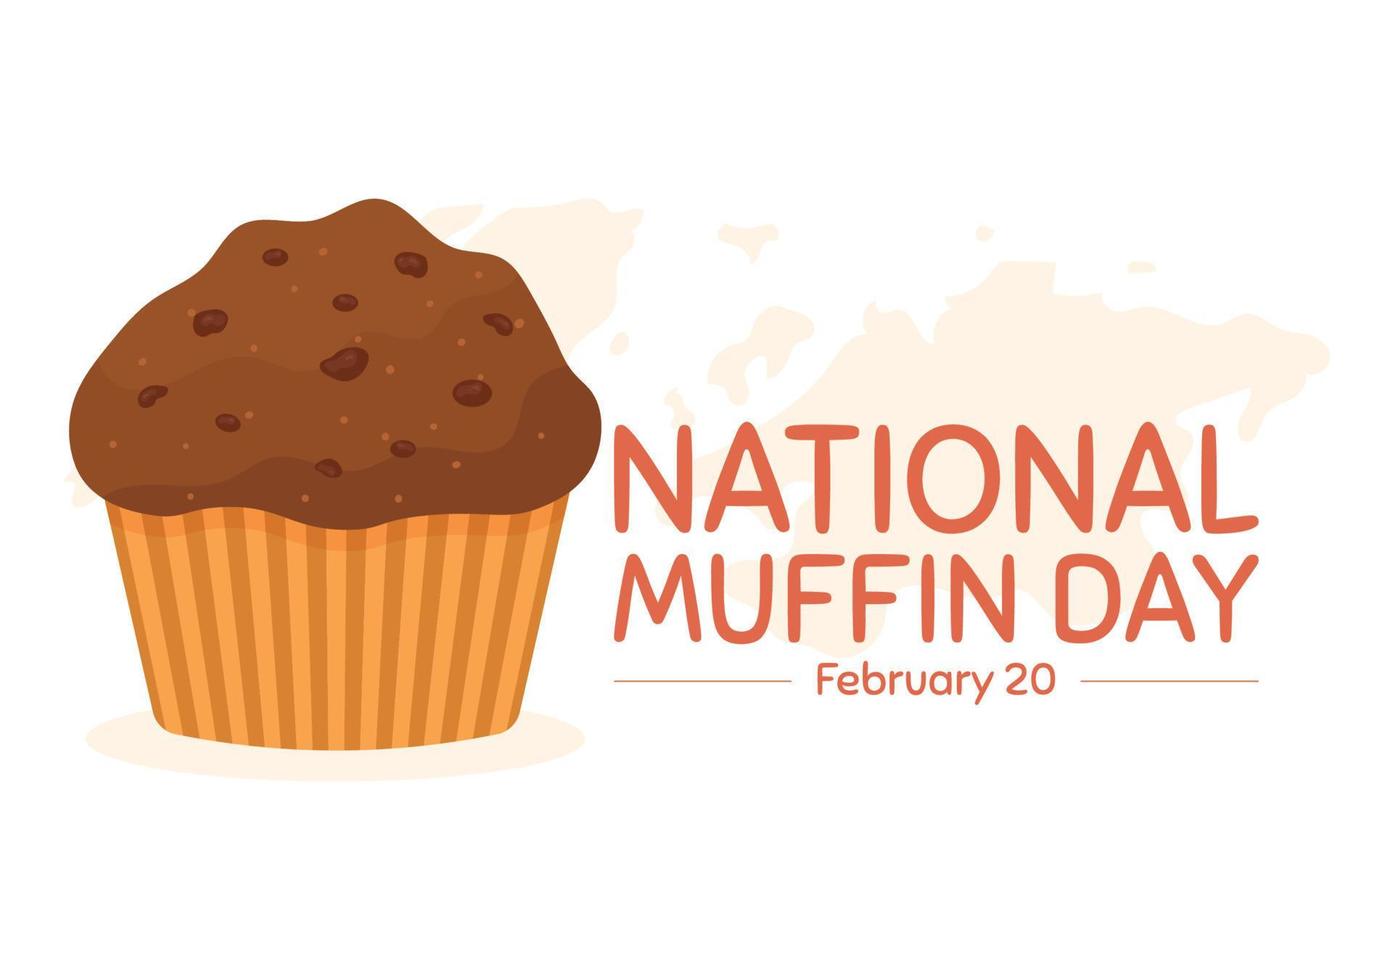 nationell muffin dag på februari 20:e med choklad chip mat klassisk muffins utsökt i platt tecknad serie hand dragen mall illustration vektor